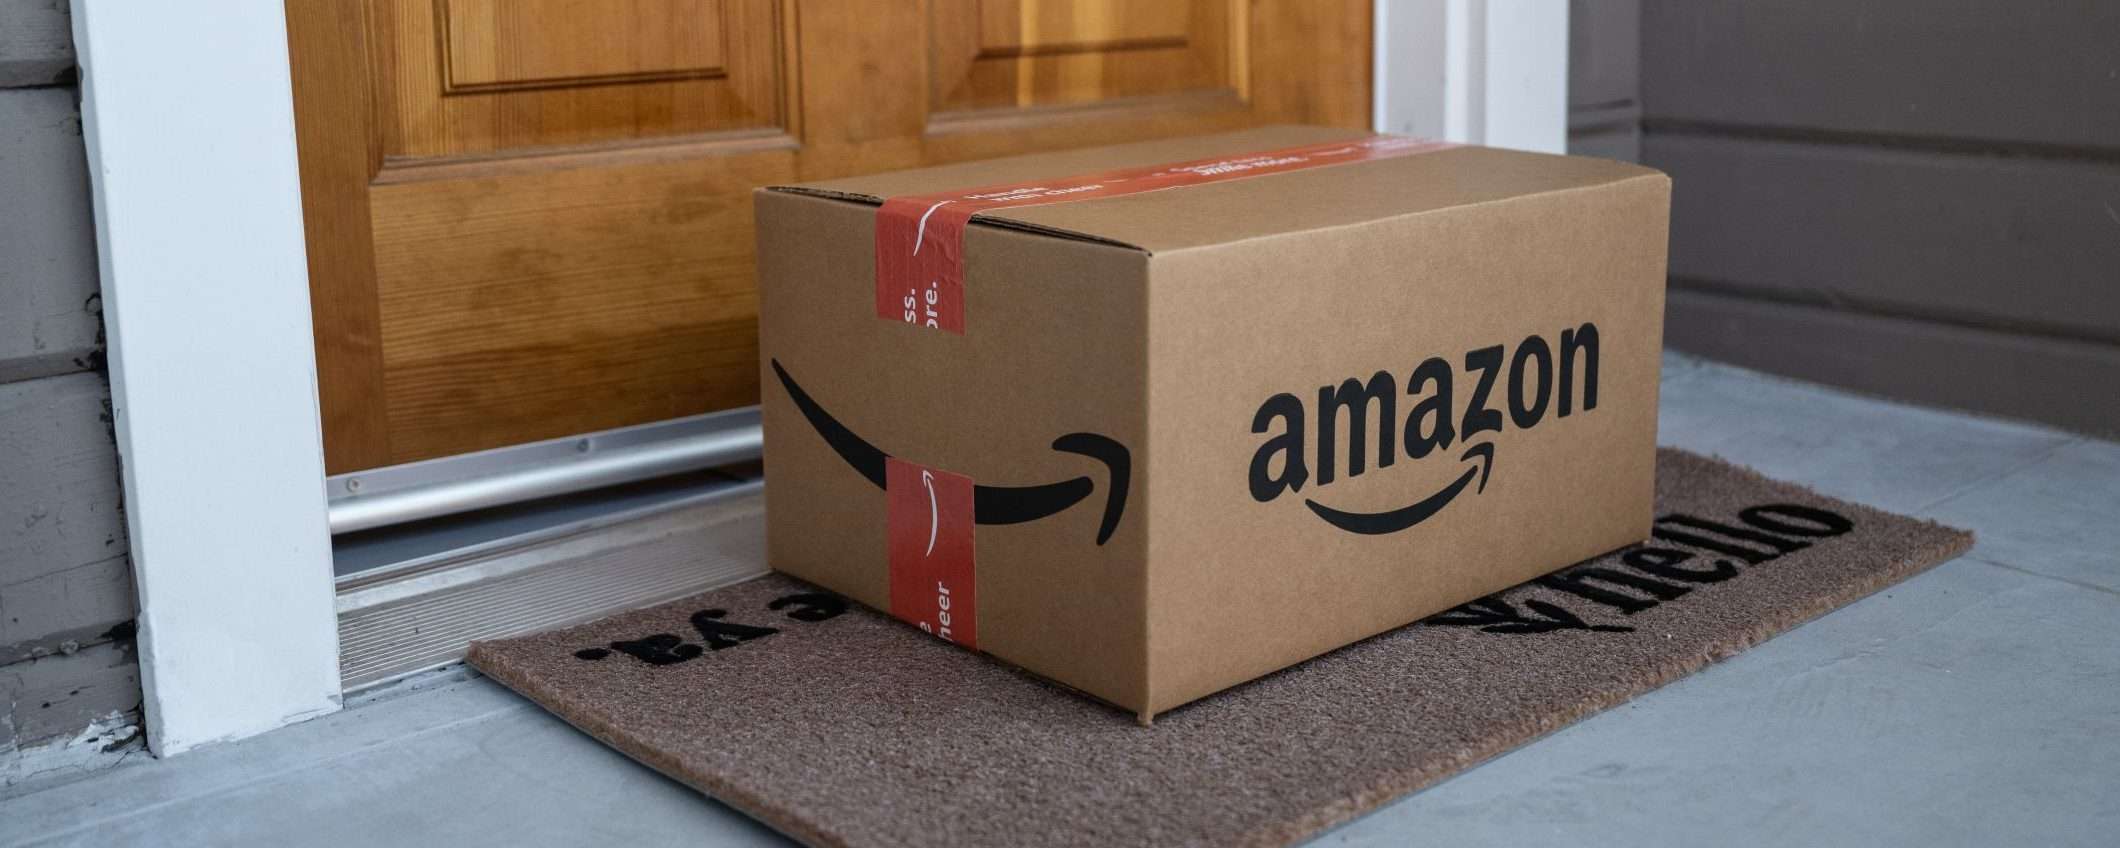 FTC denuncia Amazon: abuso di posizione dominante